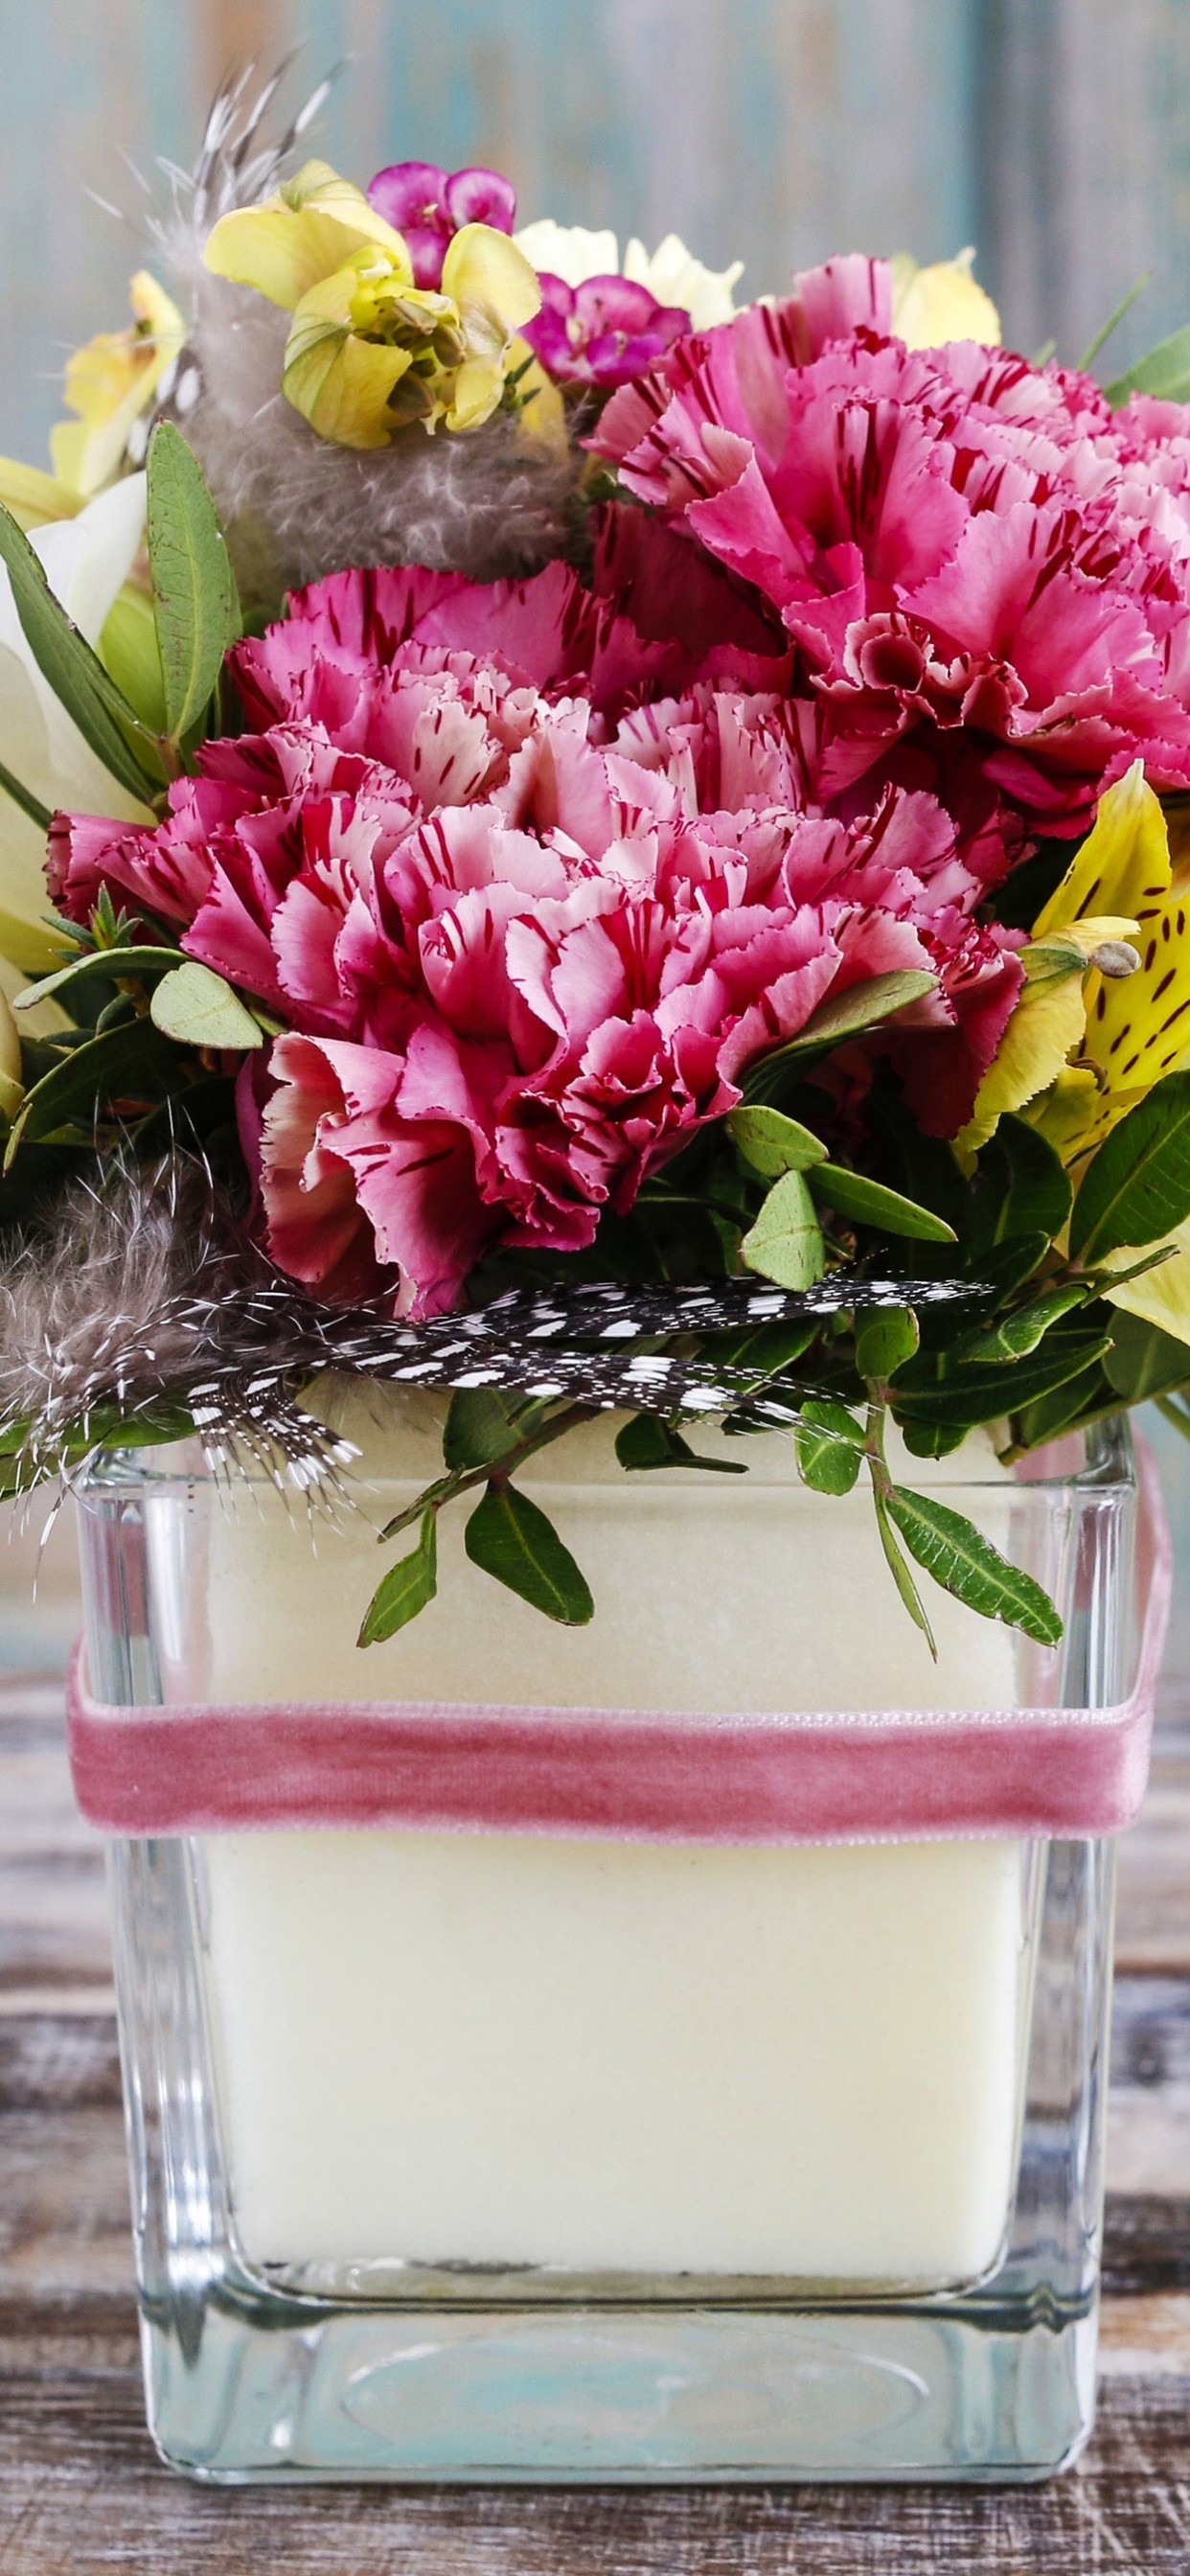 Fleurs Roses et Violettes Dans un Vase en Verre Transparent. Wallpaper in 1242x2688 Resolution